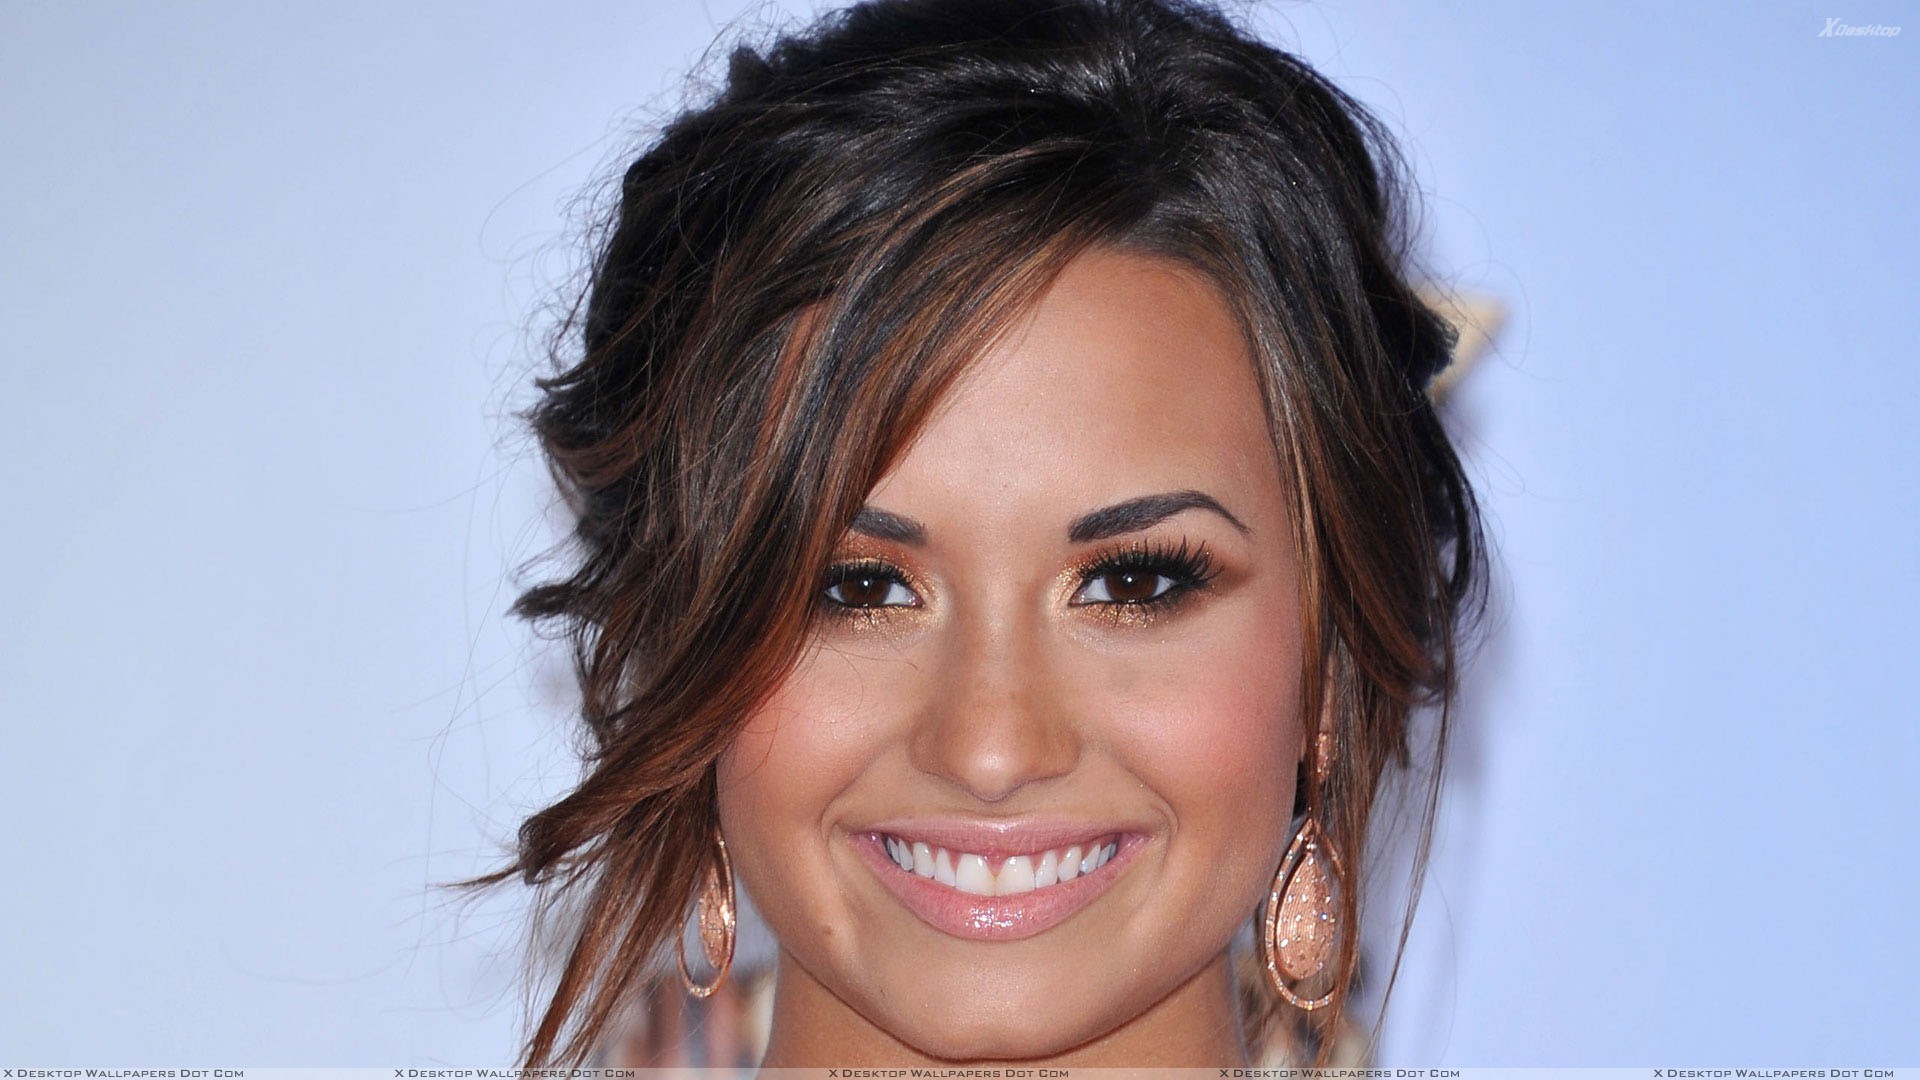 1920x1080 Cute Smiling Face Closeup Of Demi Lovato Wallpaper Smile